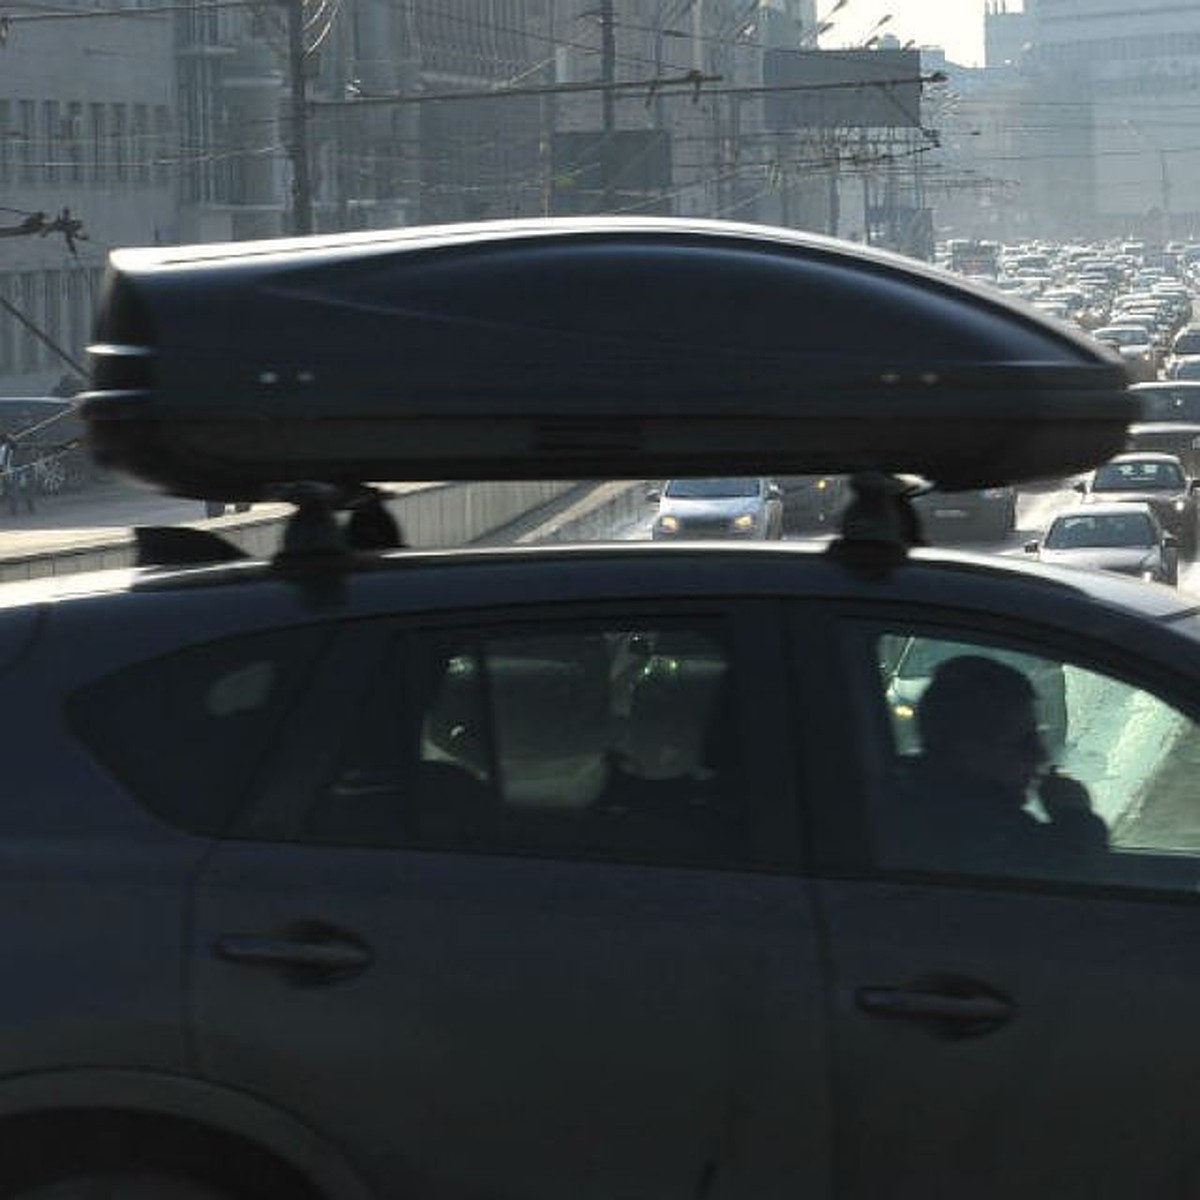 Багажник на крышу автомобиля можно. Штраф за багажник на крыше автомобиля 2020. Багажник на крышу авто штраф. Штраф за багажник на крыше. Запрет на багажник на крышу автомобиля.